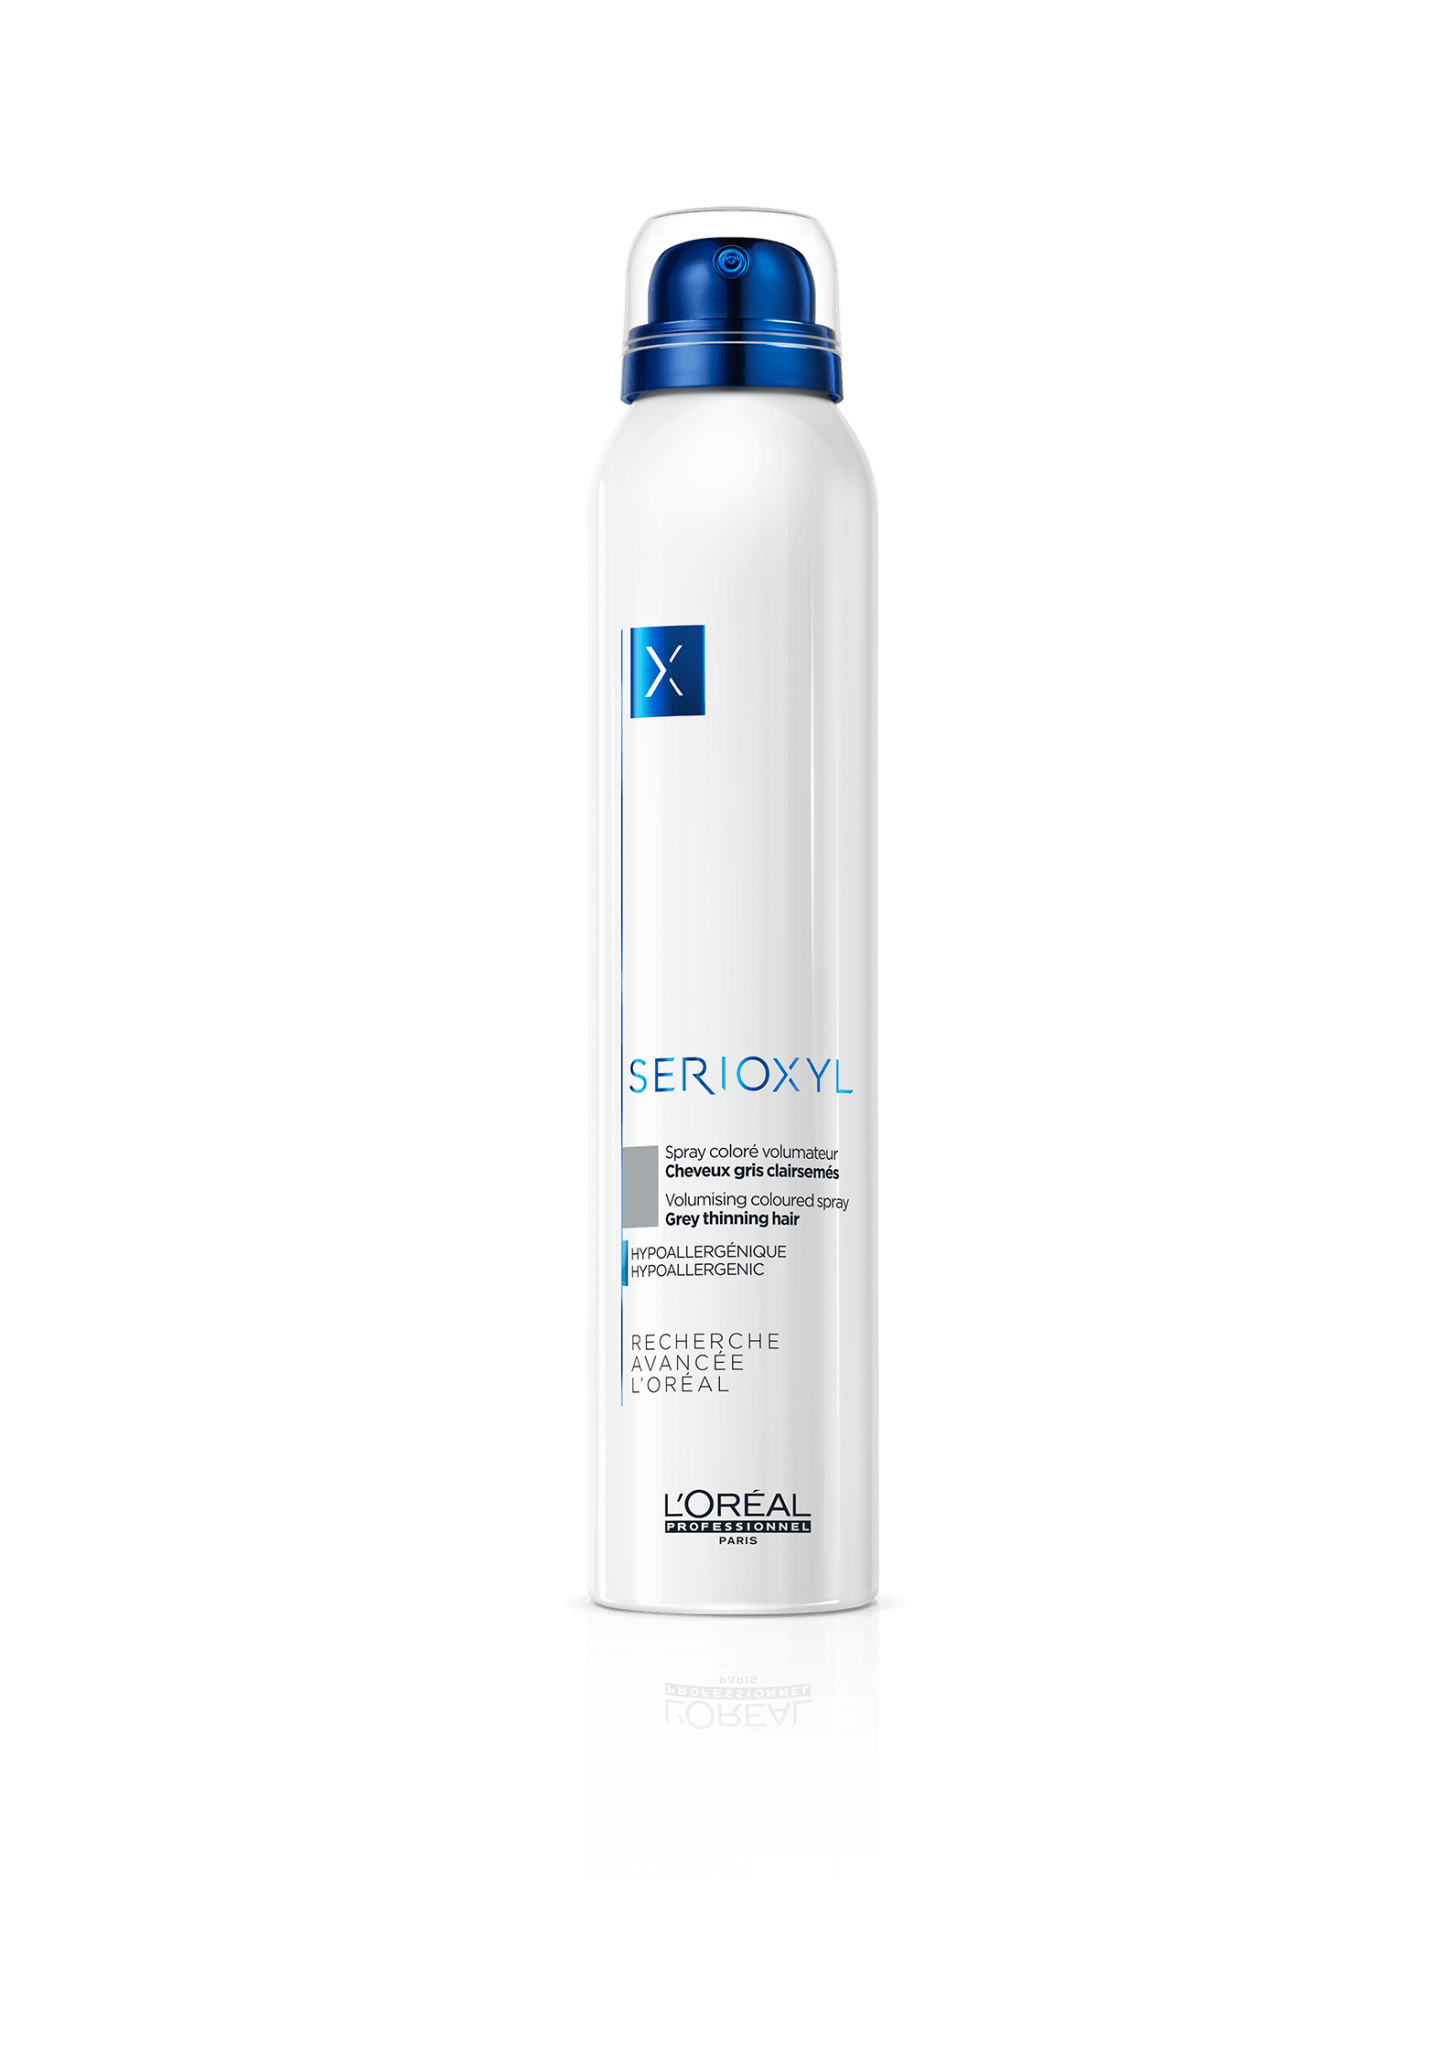 L'ORÉAL - SERIOXYL Spray Coloré Volumateur Cheveux Clairsemés 200ml (6.7 oz) - Gris